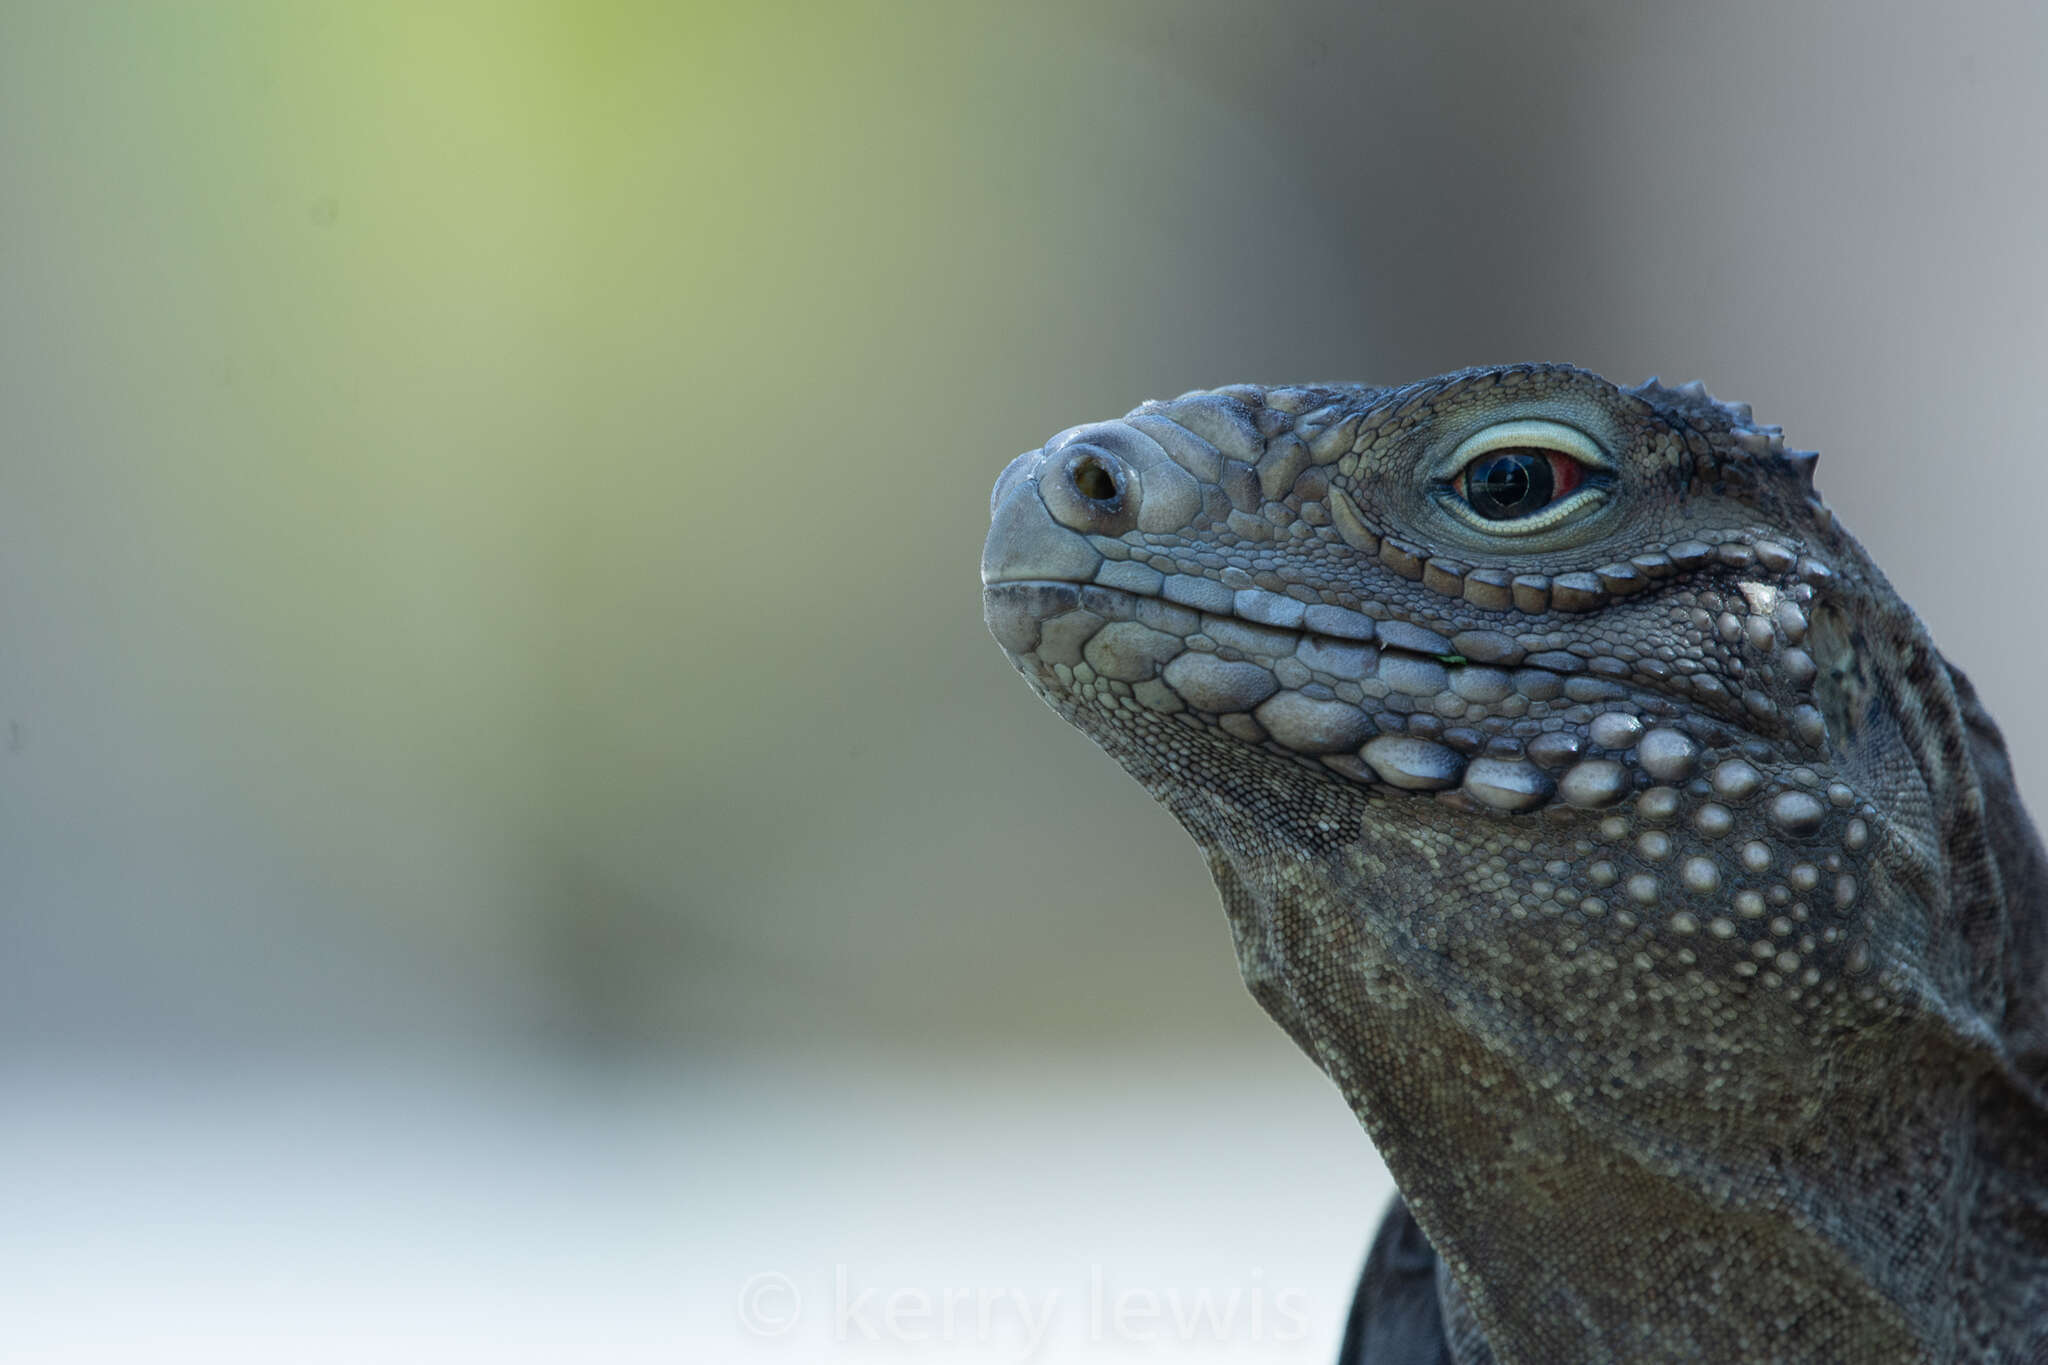 Image of Cayman Island Ground Iguana